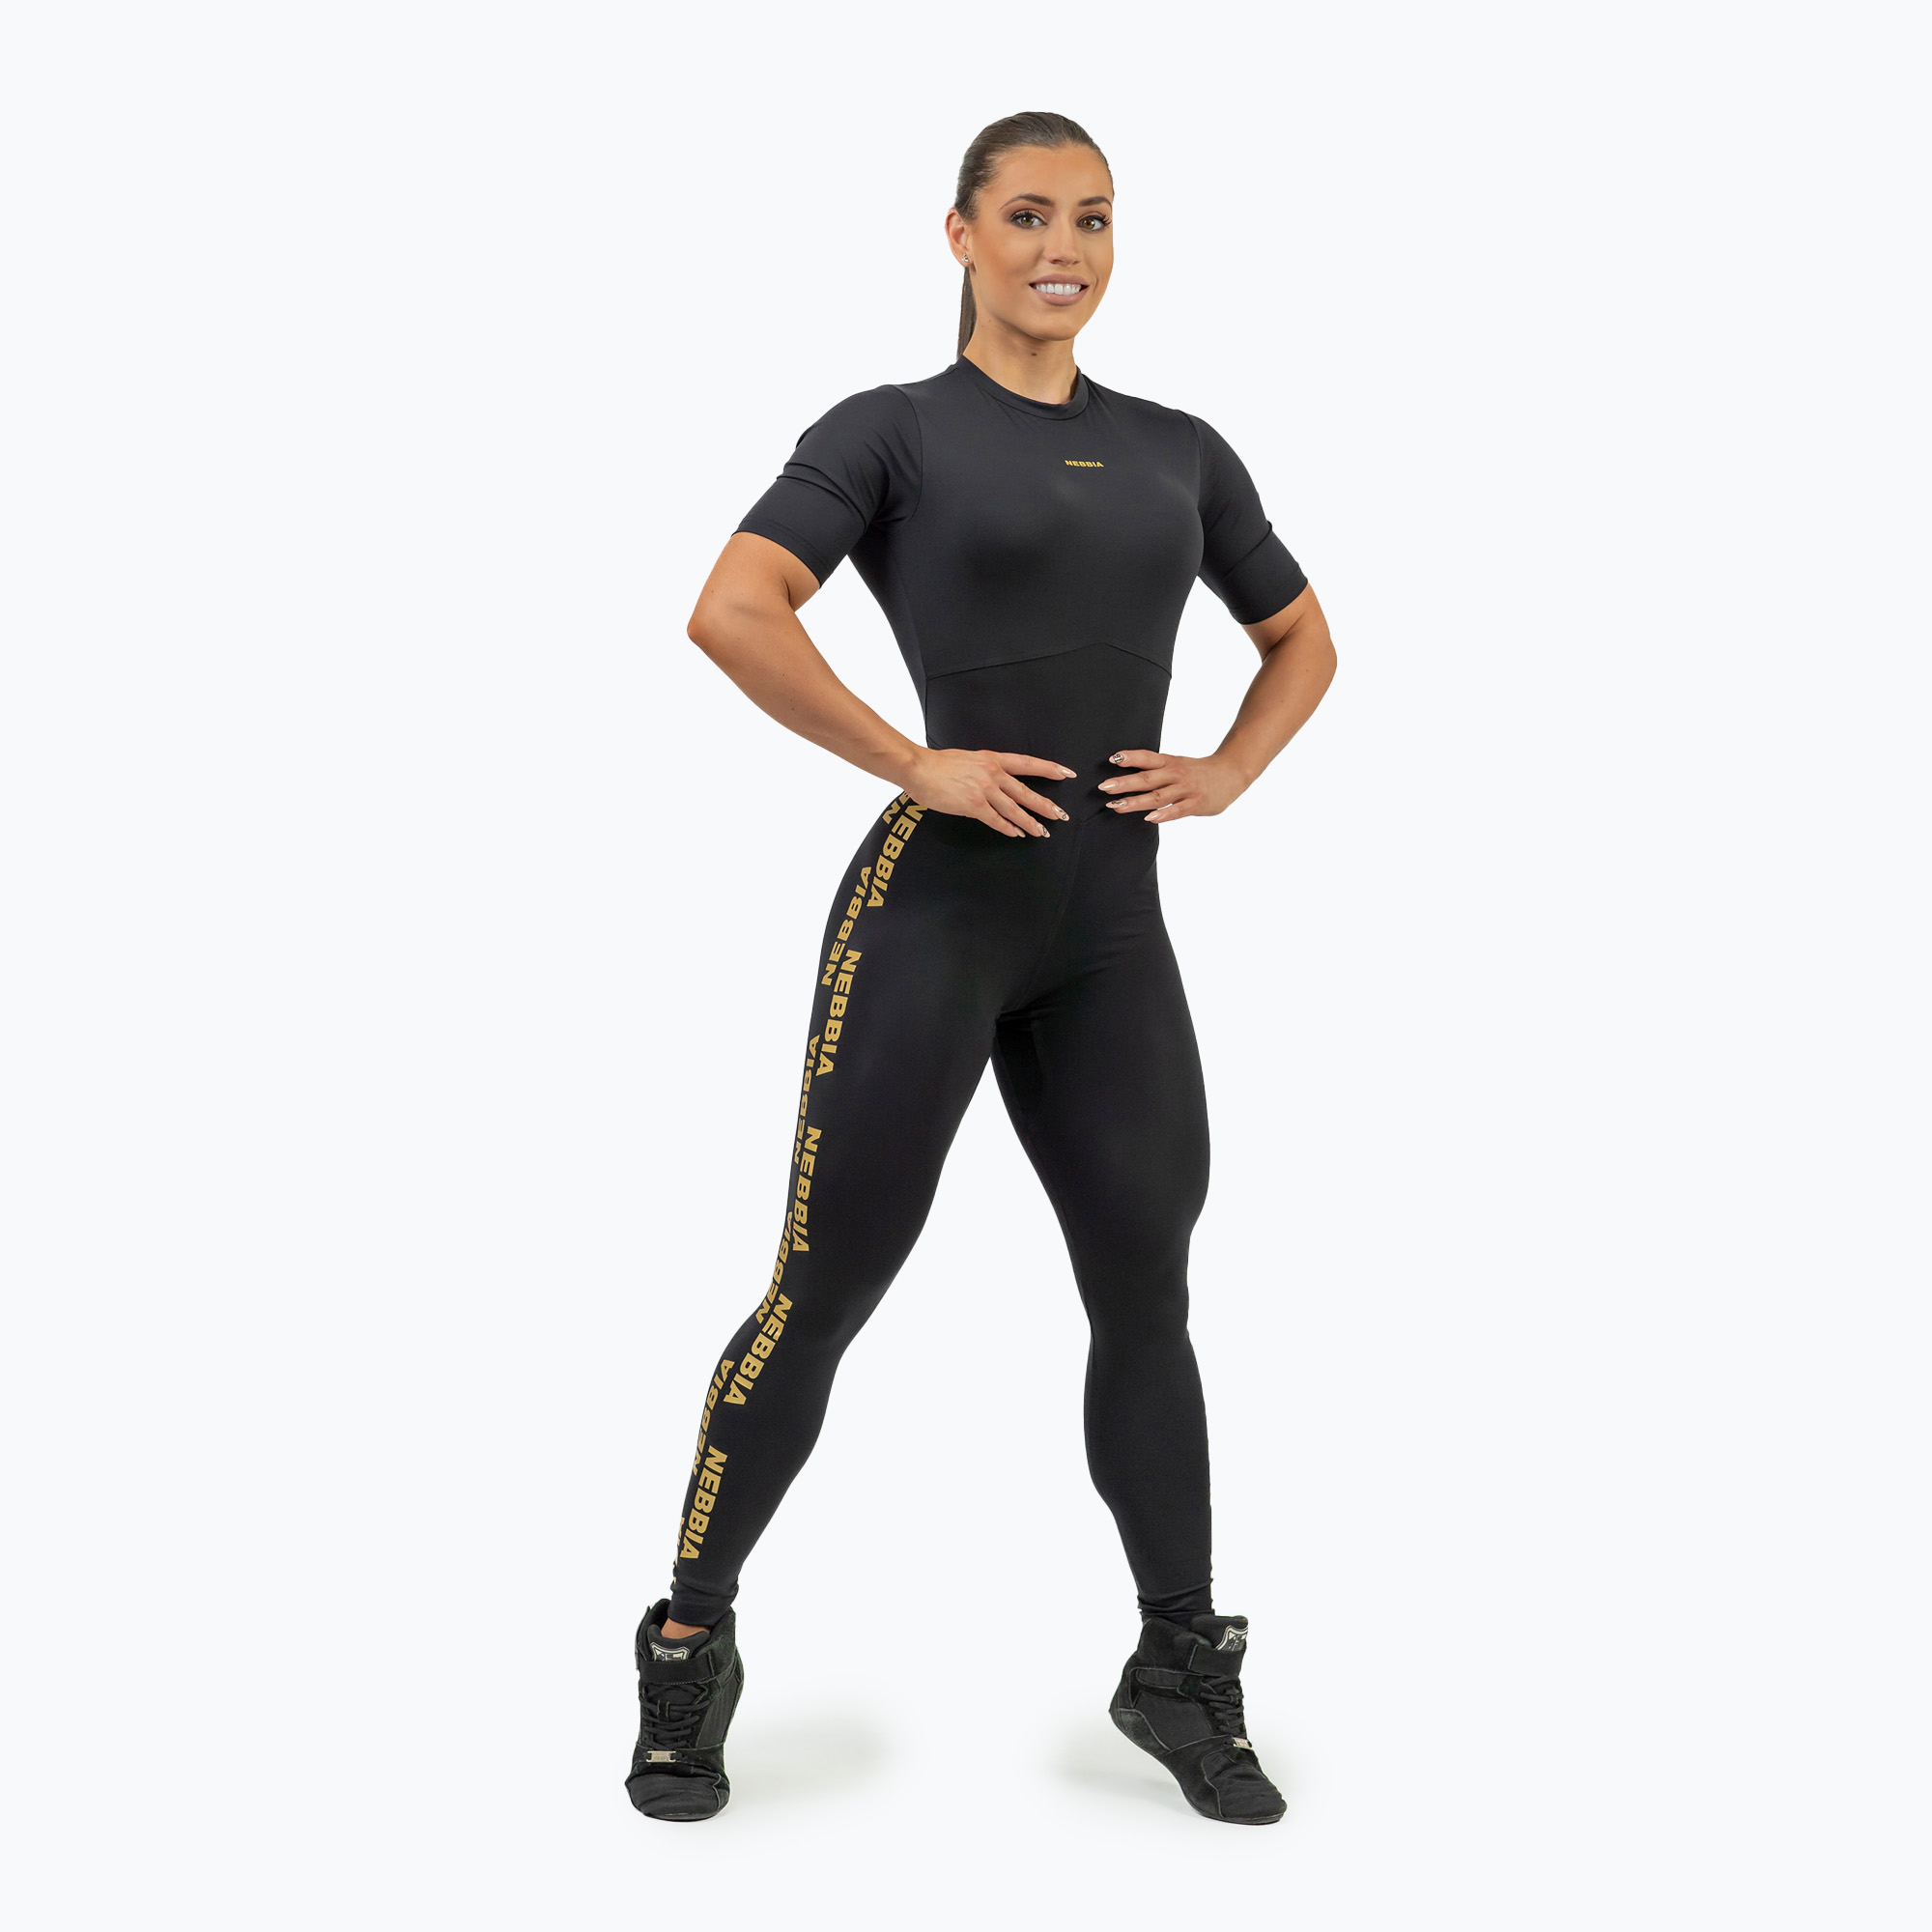 Дамски тренировъчен костюм NEBBIA Intense Focus black/gold